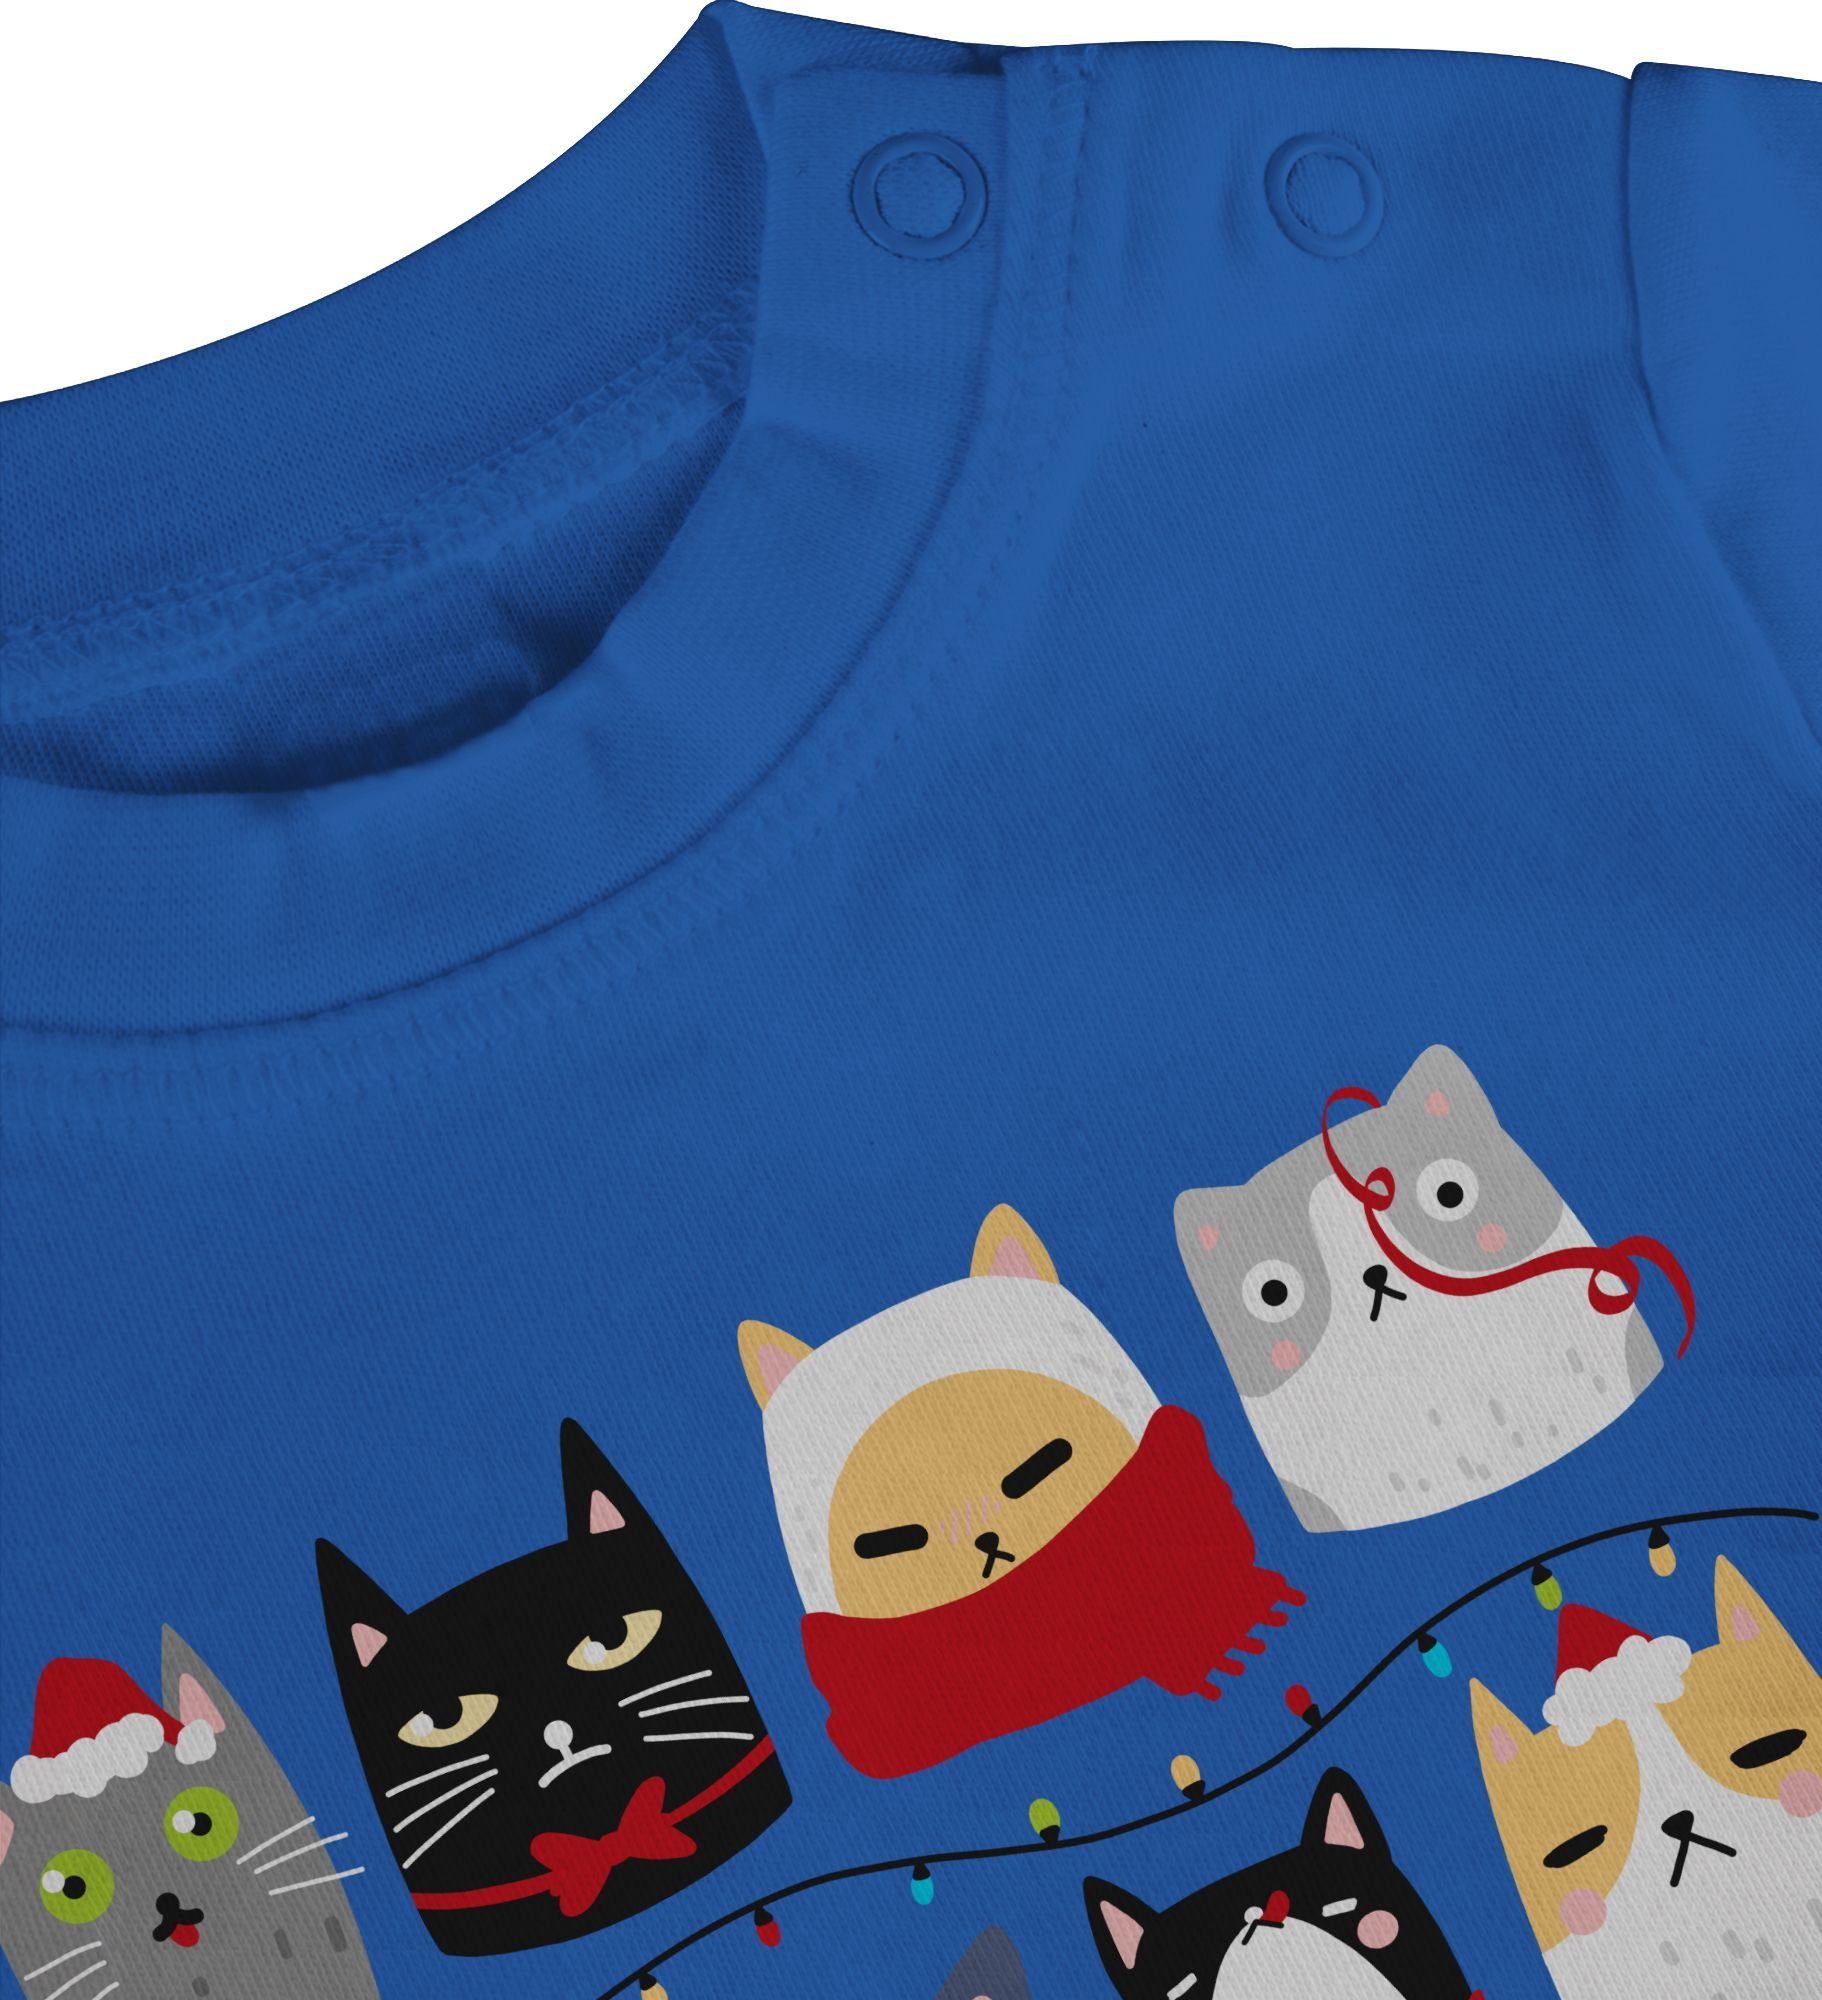 Weihnachten 1 Shirtracer Weihnachten Katzen Royalblau T-Shirt Baby zu Kleidung